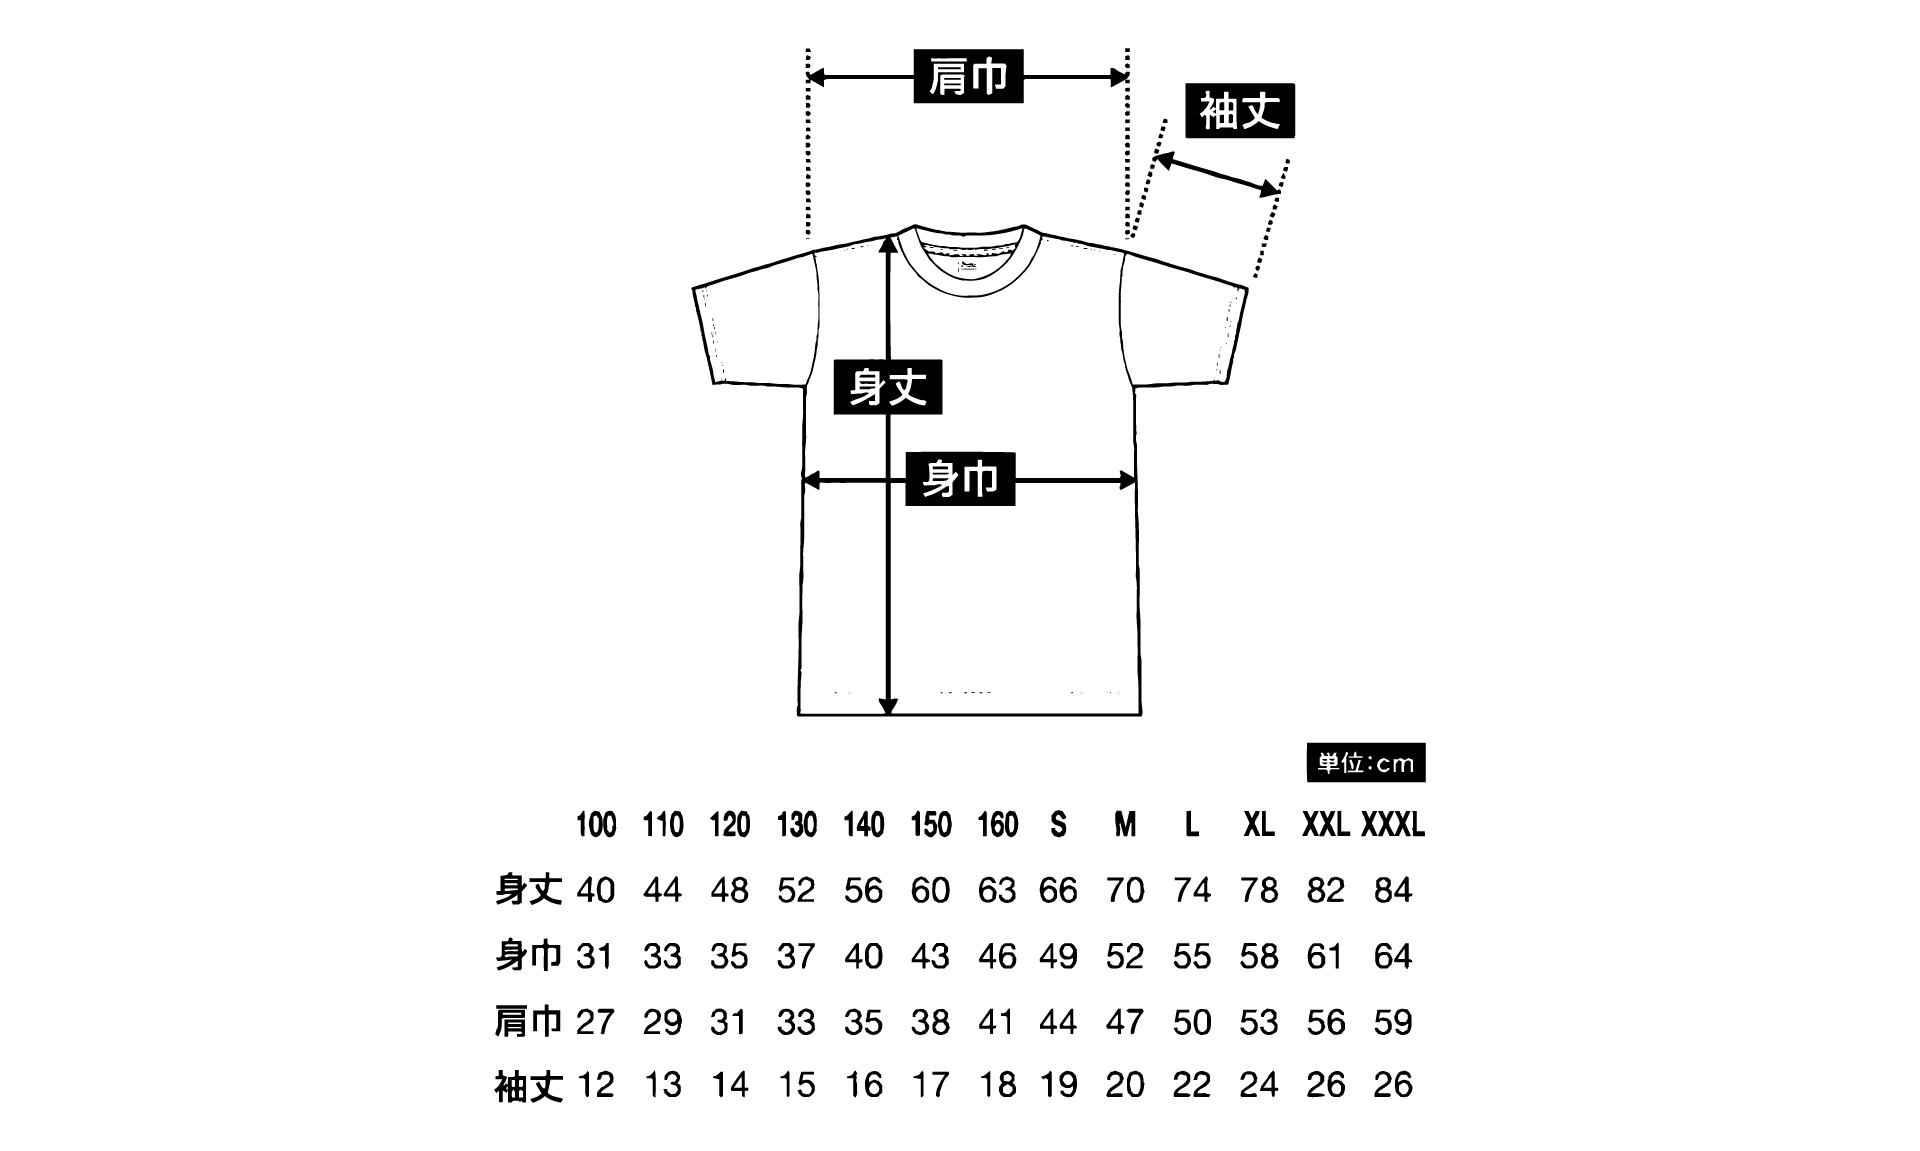 【KAL会員限定】KURUMA ASOBI LABオリジナルTシャツ